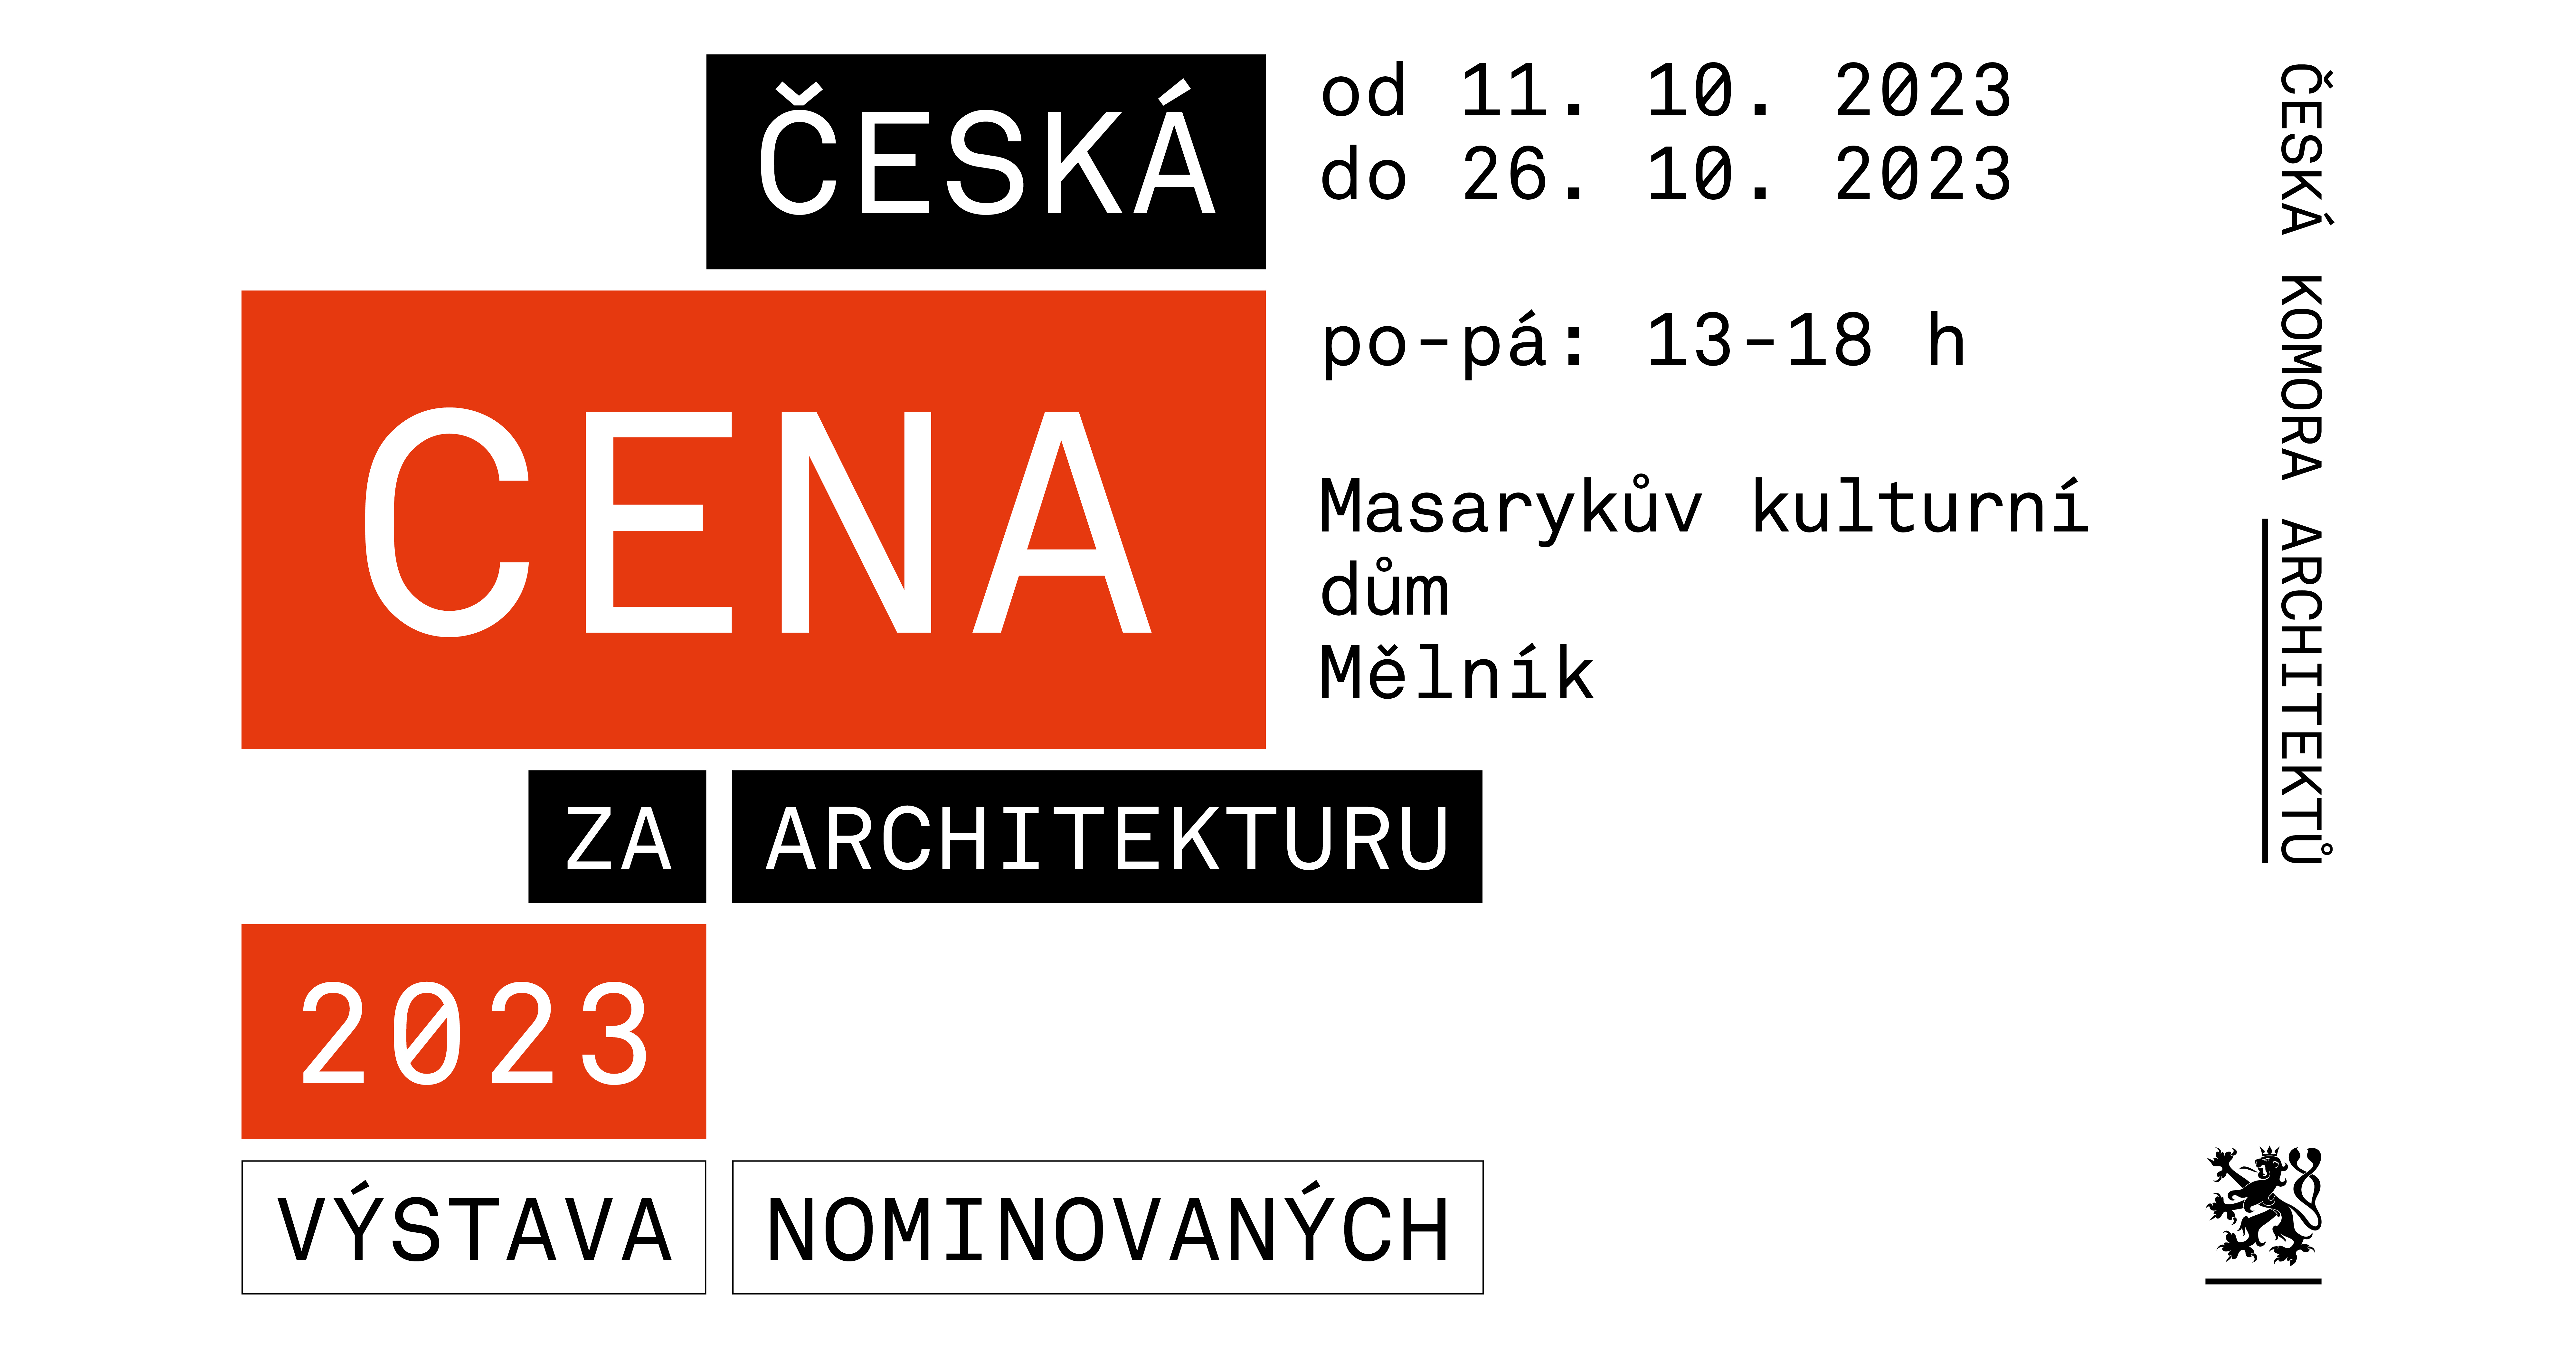 Výstava České ceny za architekturu - Dny architektury 2023